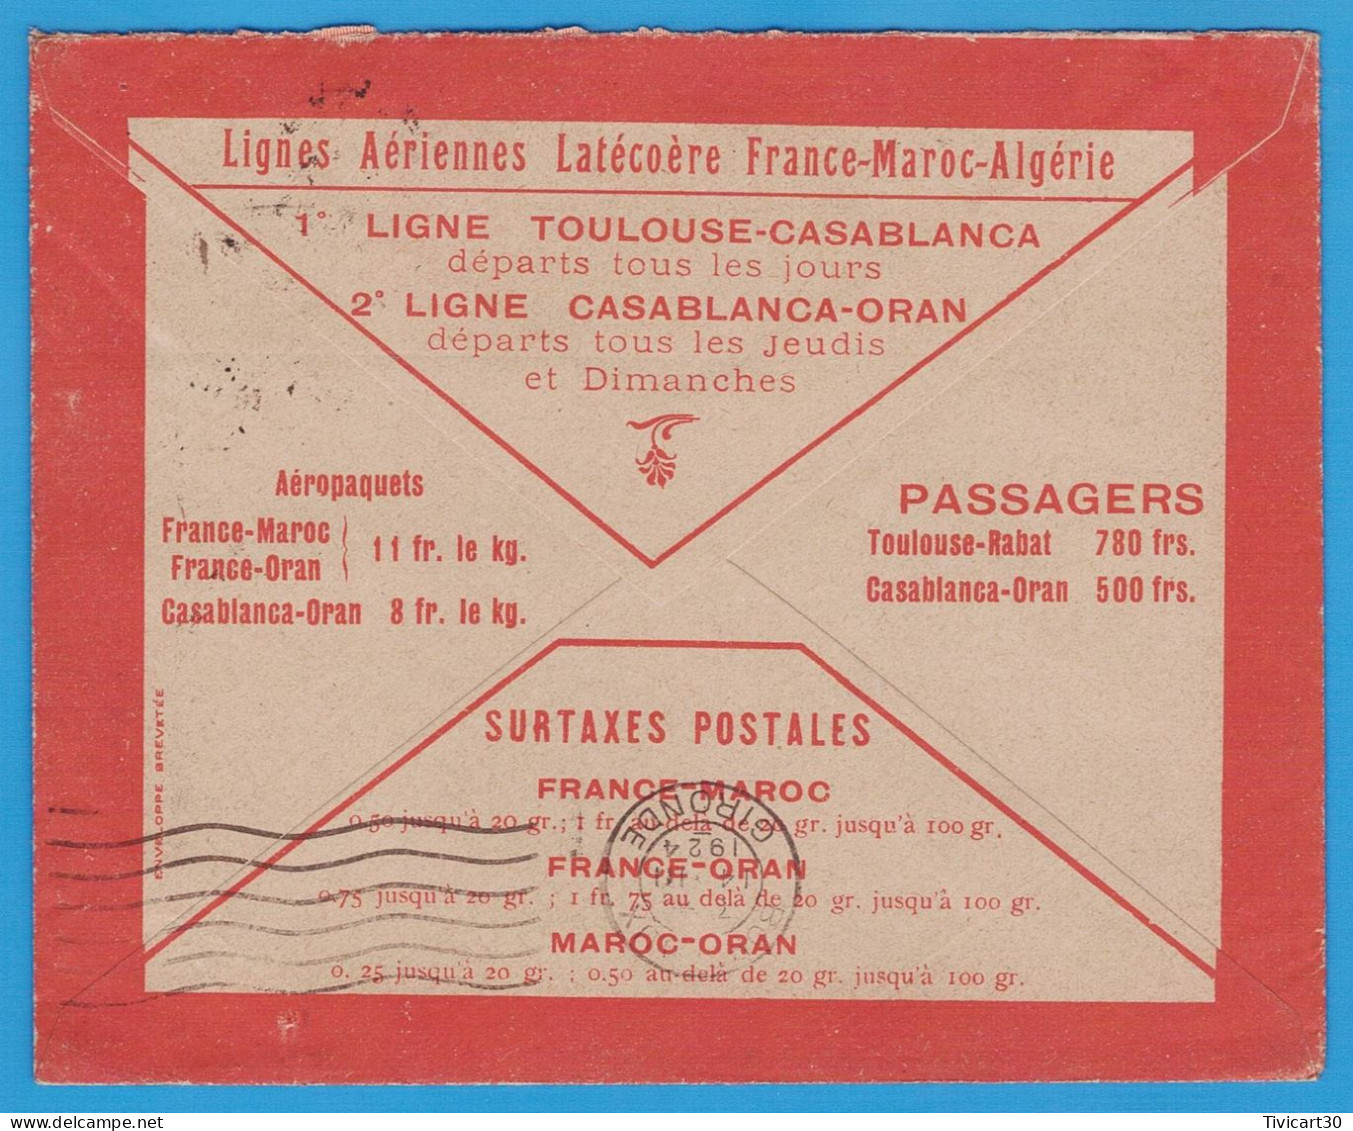 LETTRE PAR AVION DE 1924 - LIGNES AERIENNES LATECOERE FRANCE-MAROC-ALGERIE - CASABLANCA (MAROC) POUR BORDEAUX - Luchtpost